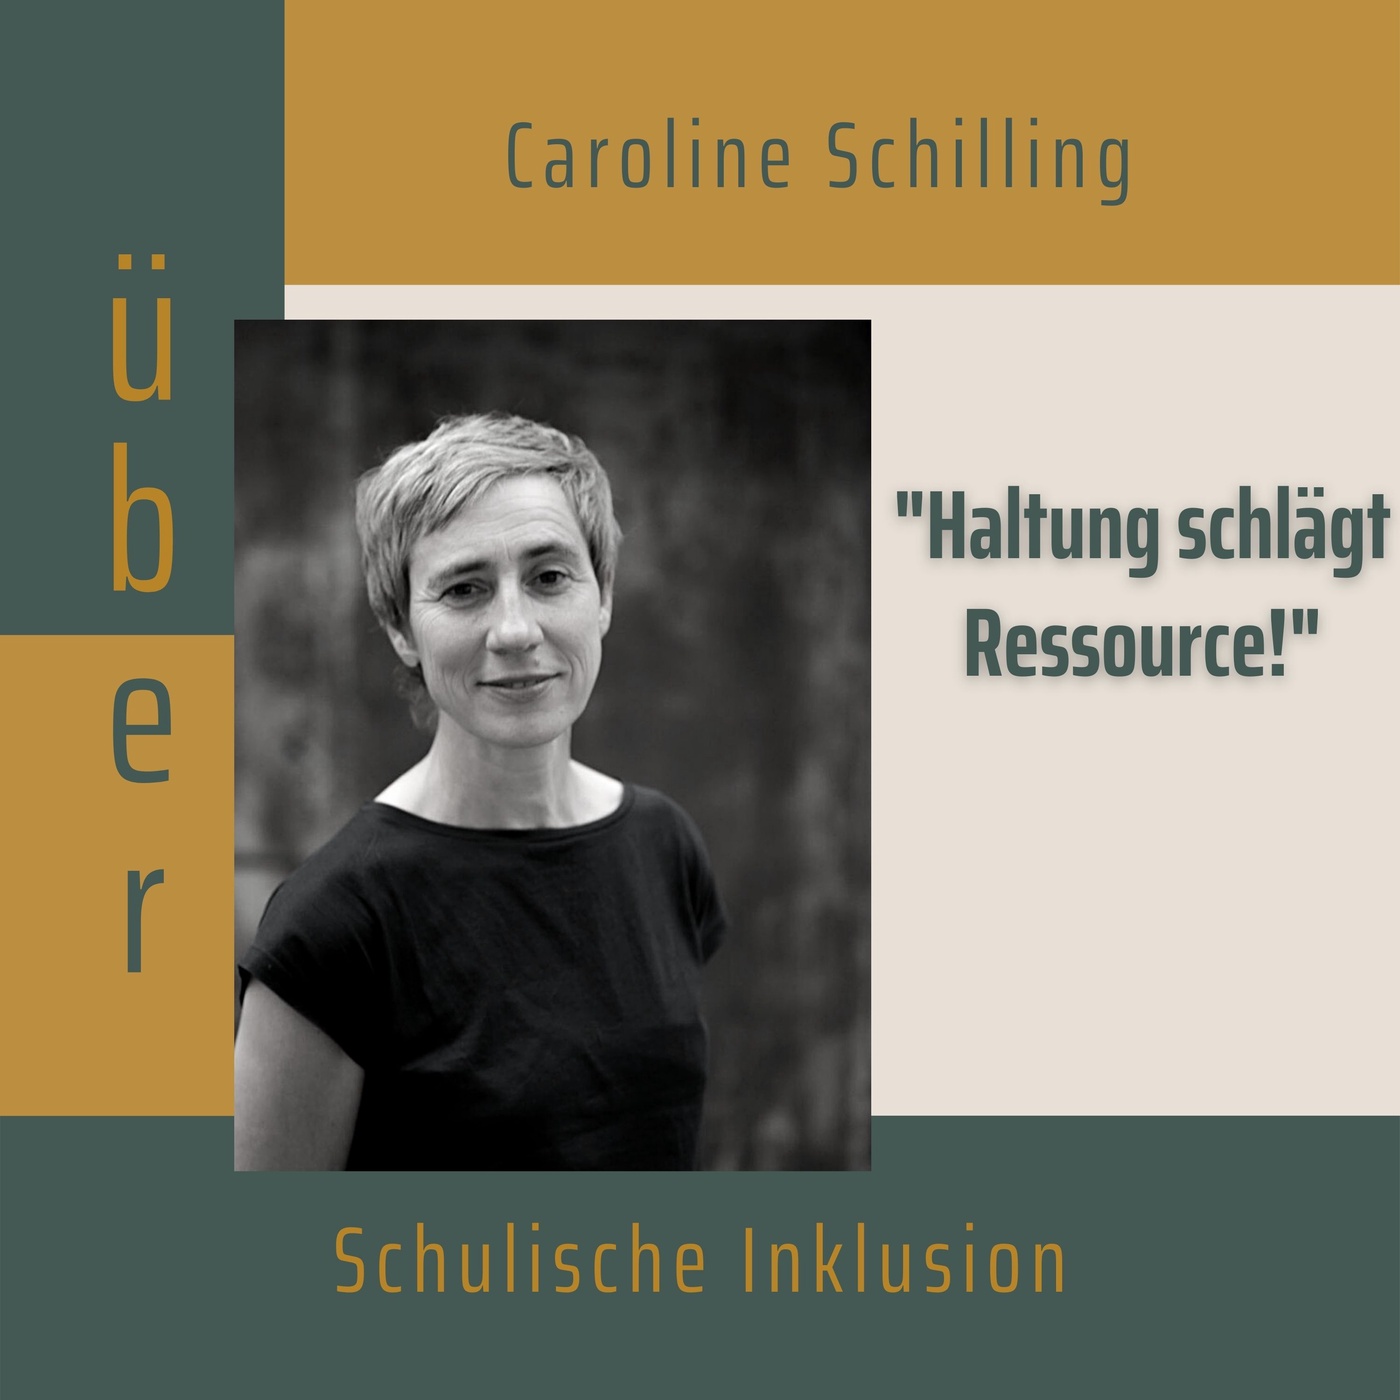 Folge 002: Caroline Schilling über schulische Inklusion aus praktischer Sicht